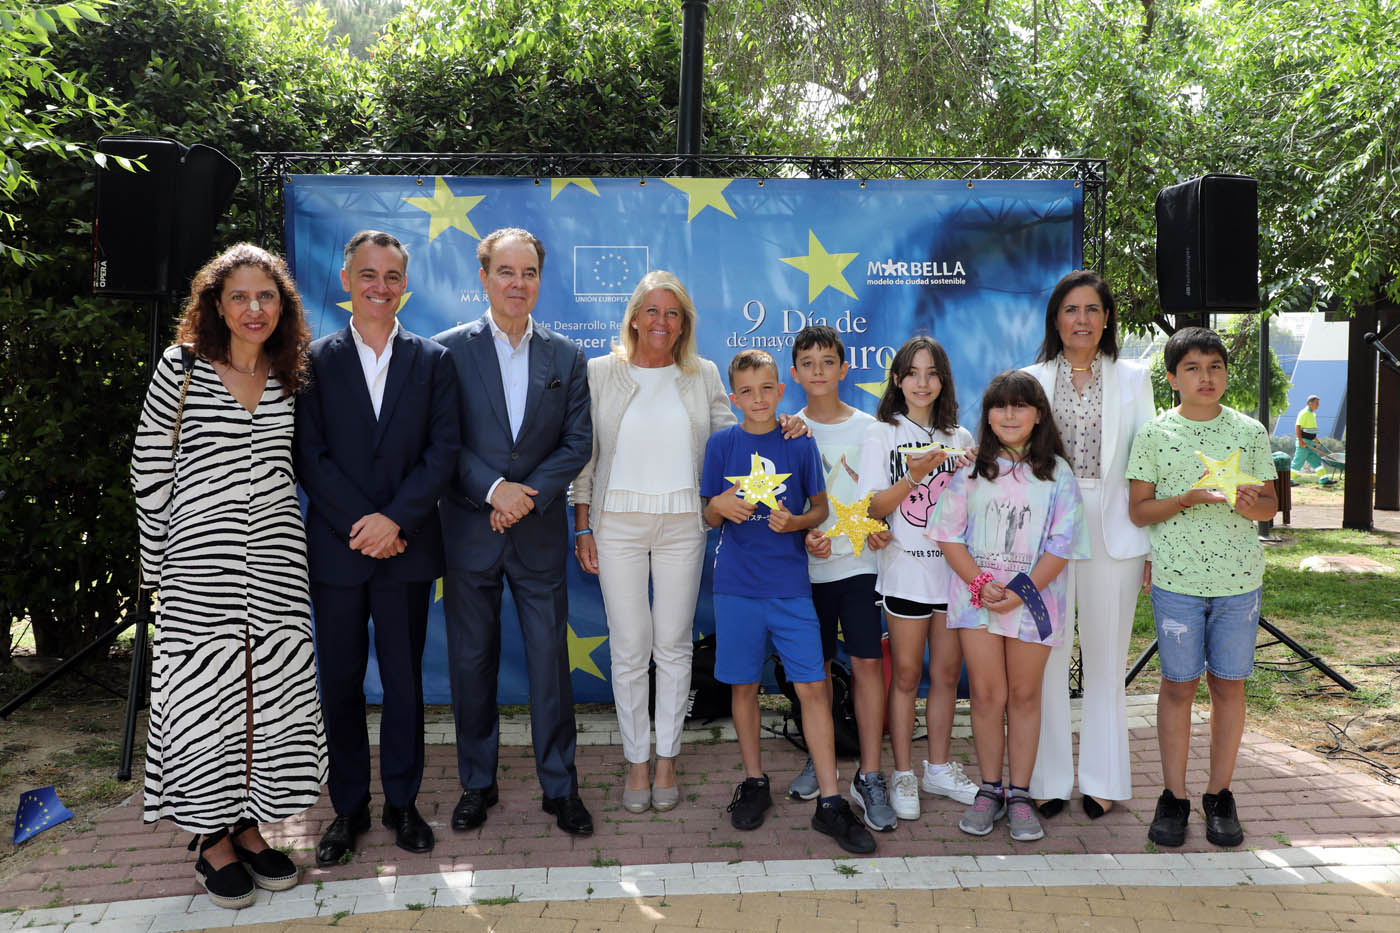 Marbella celebra el Día de Europa con actividades para los escolares y un reconocimiento a los representantes de las asociaciones comunitarias de la ciudad